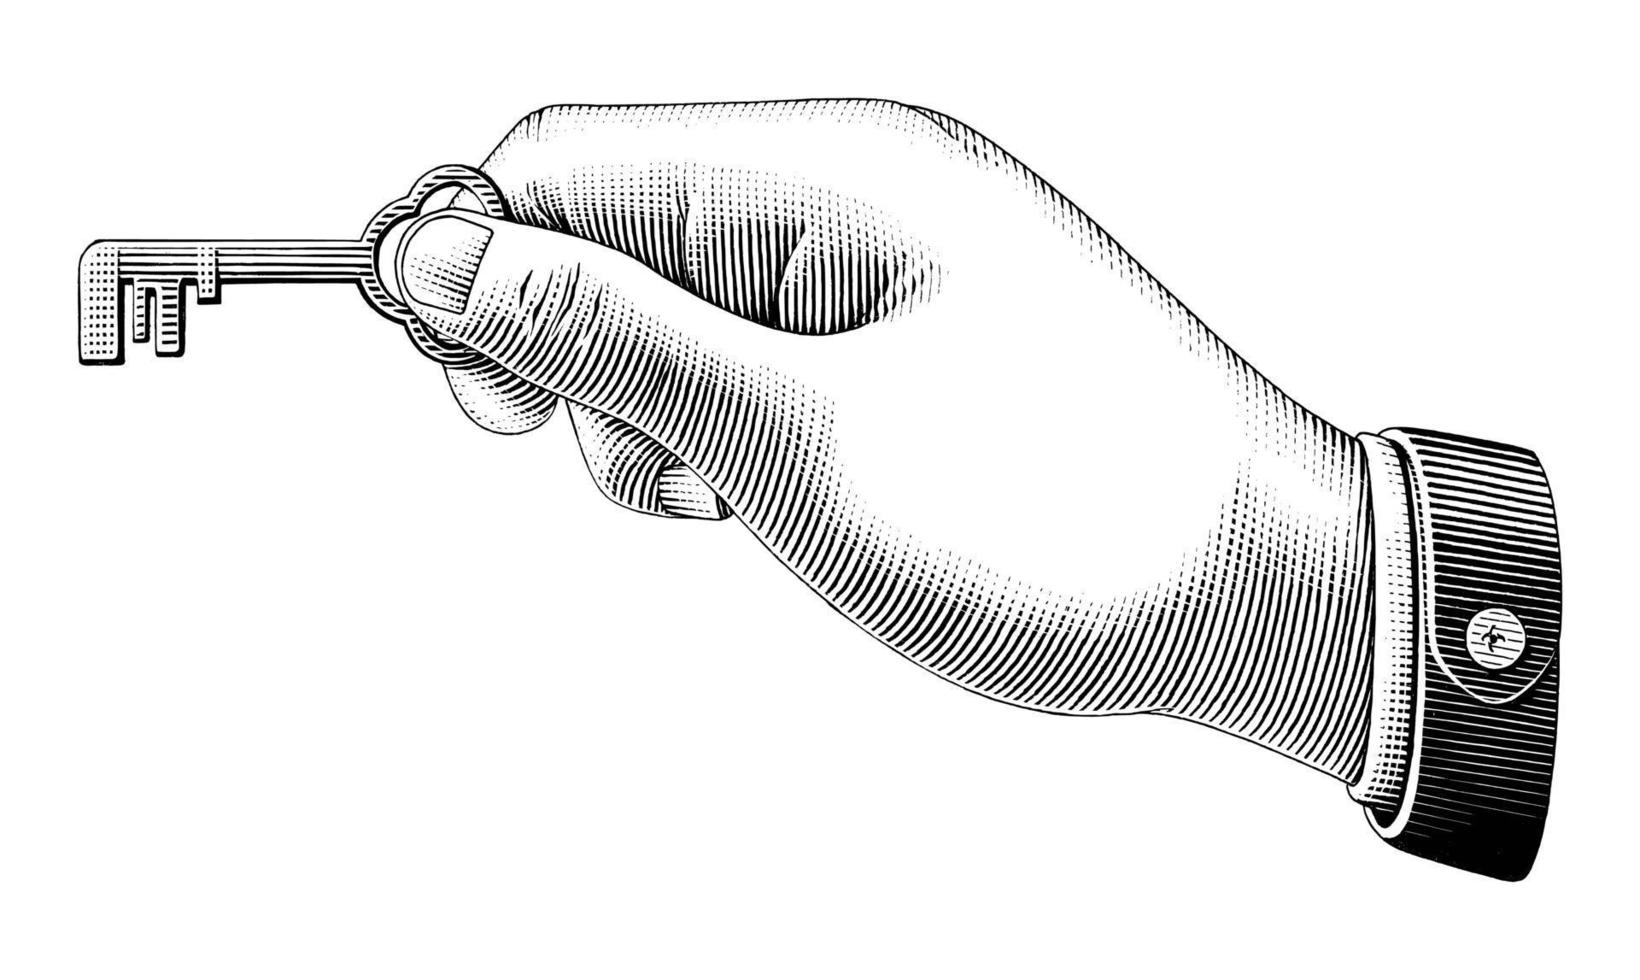 mano humana sosteniendo la llave dibujo estilo vintage arte en blanco y negro aislado sobre fondo blanco vector